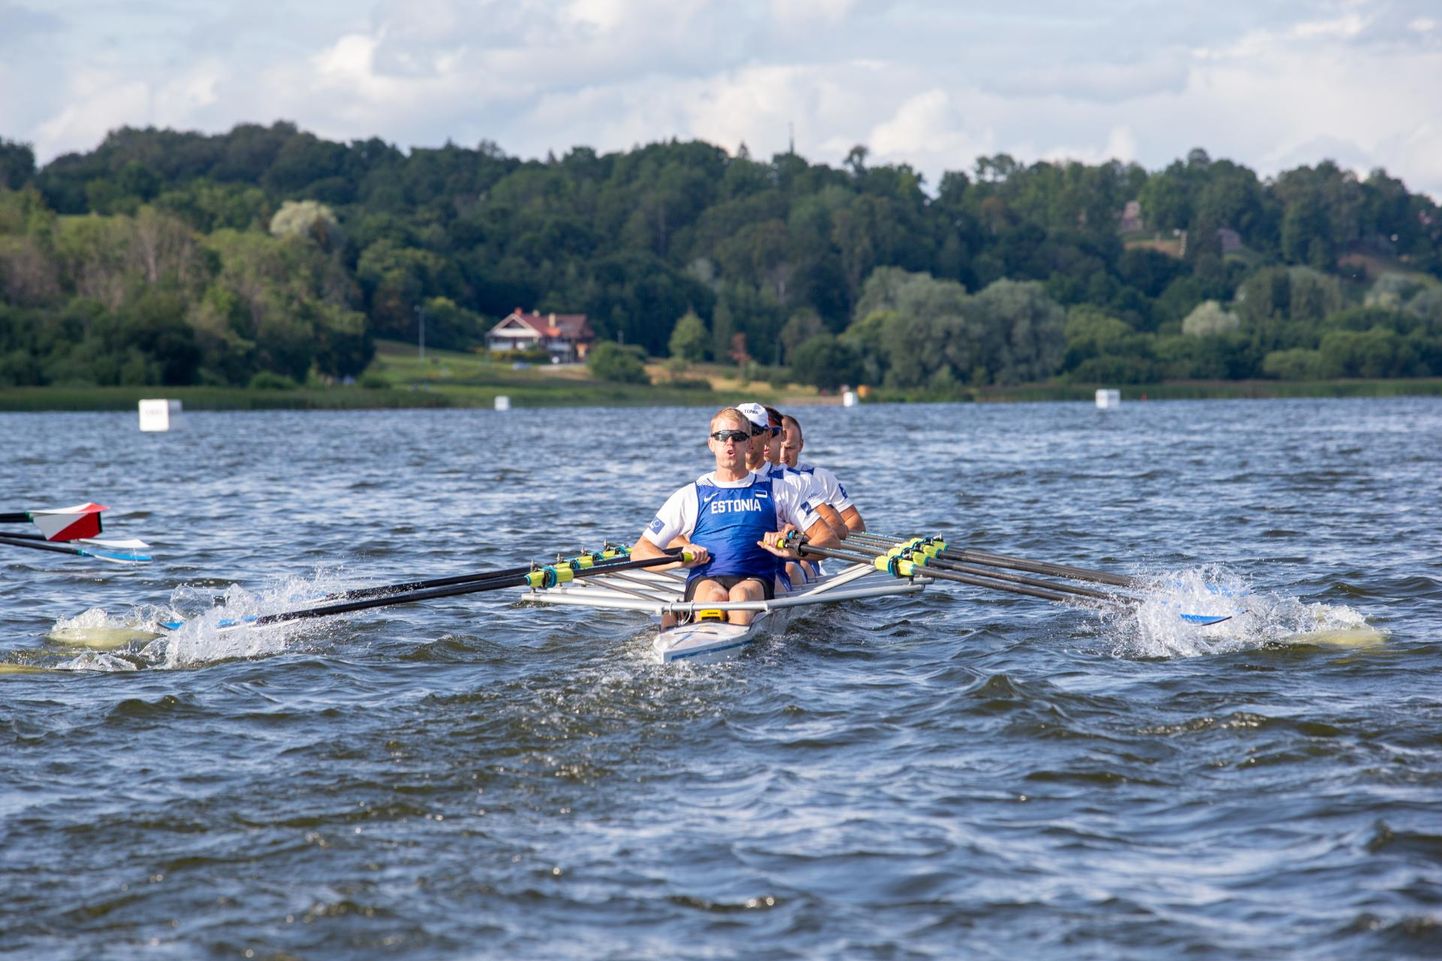 Poolas Poznańis peetud Euroopa meistrivõistlustel jäi Eesti paarisaeruline neljapaat esimesena medalikohast ilma.
Foto on tehtud tänavu Viljandi järvel Eesti meistrivõistlustel.